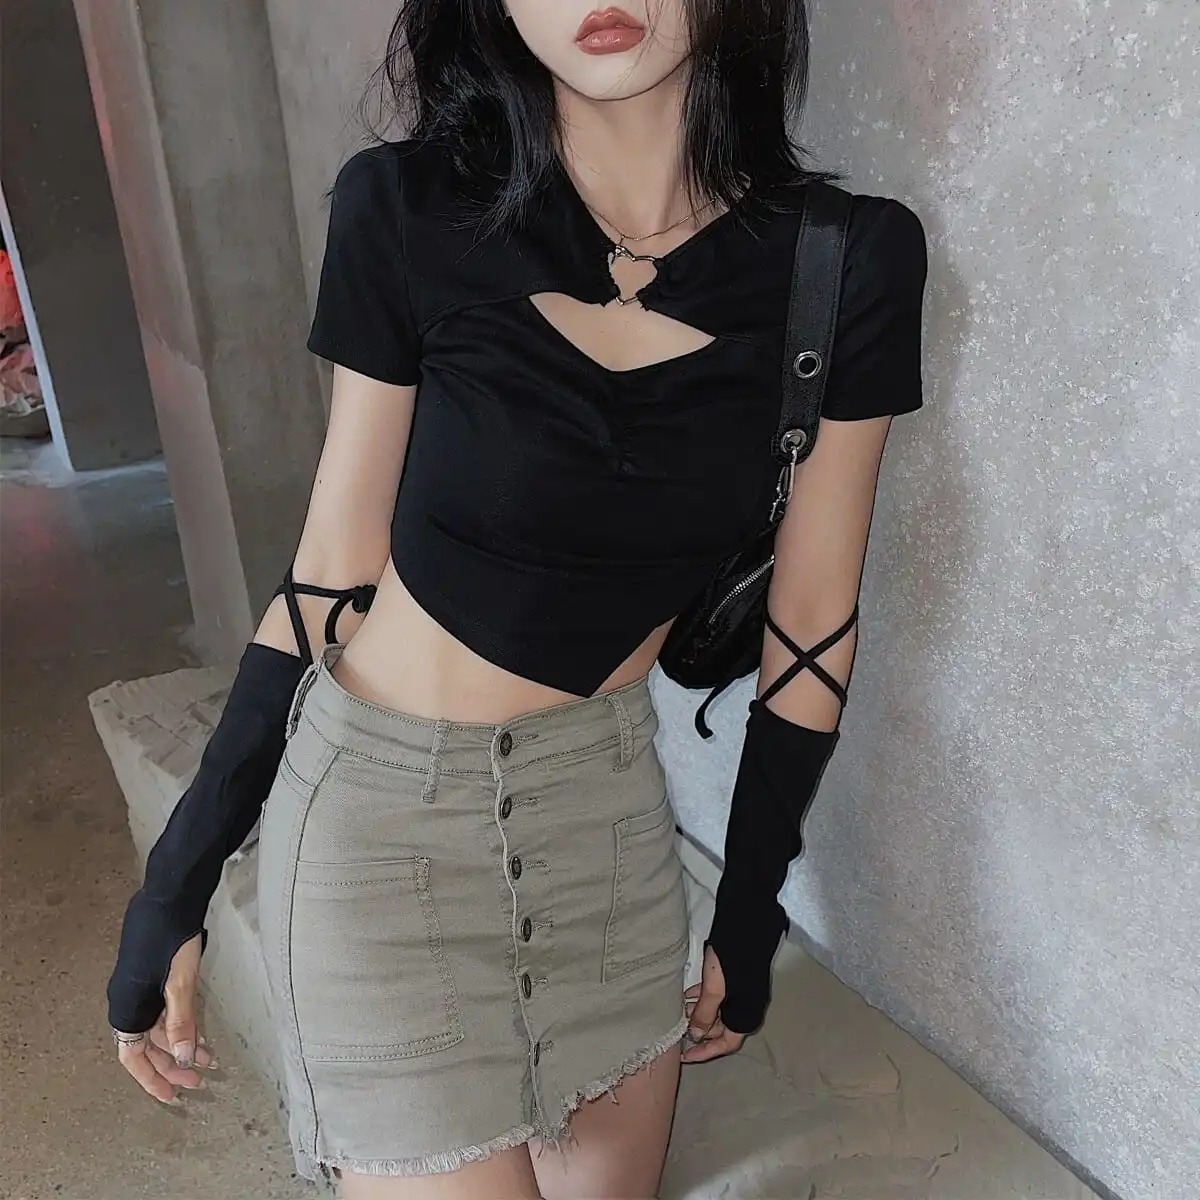 New Korean Cut Out Short Sleeve T-Shirt for Female Summer Hot Girls Sexy Slim Design Sense Versatile Short Crop Top